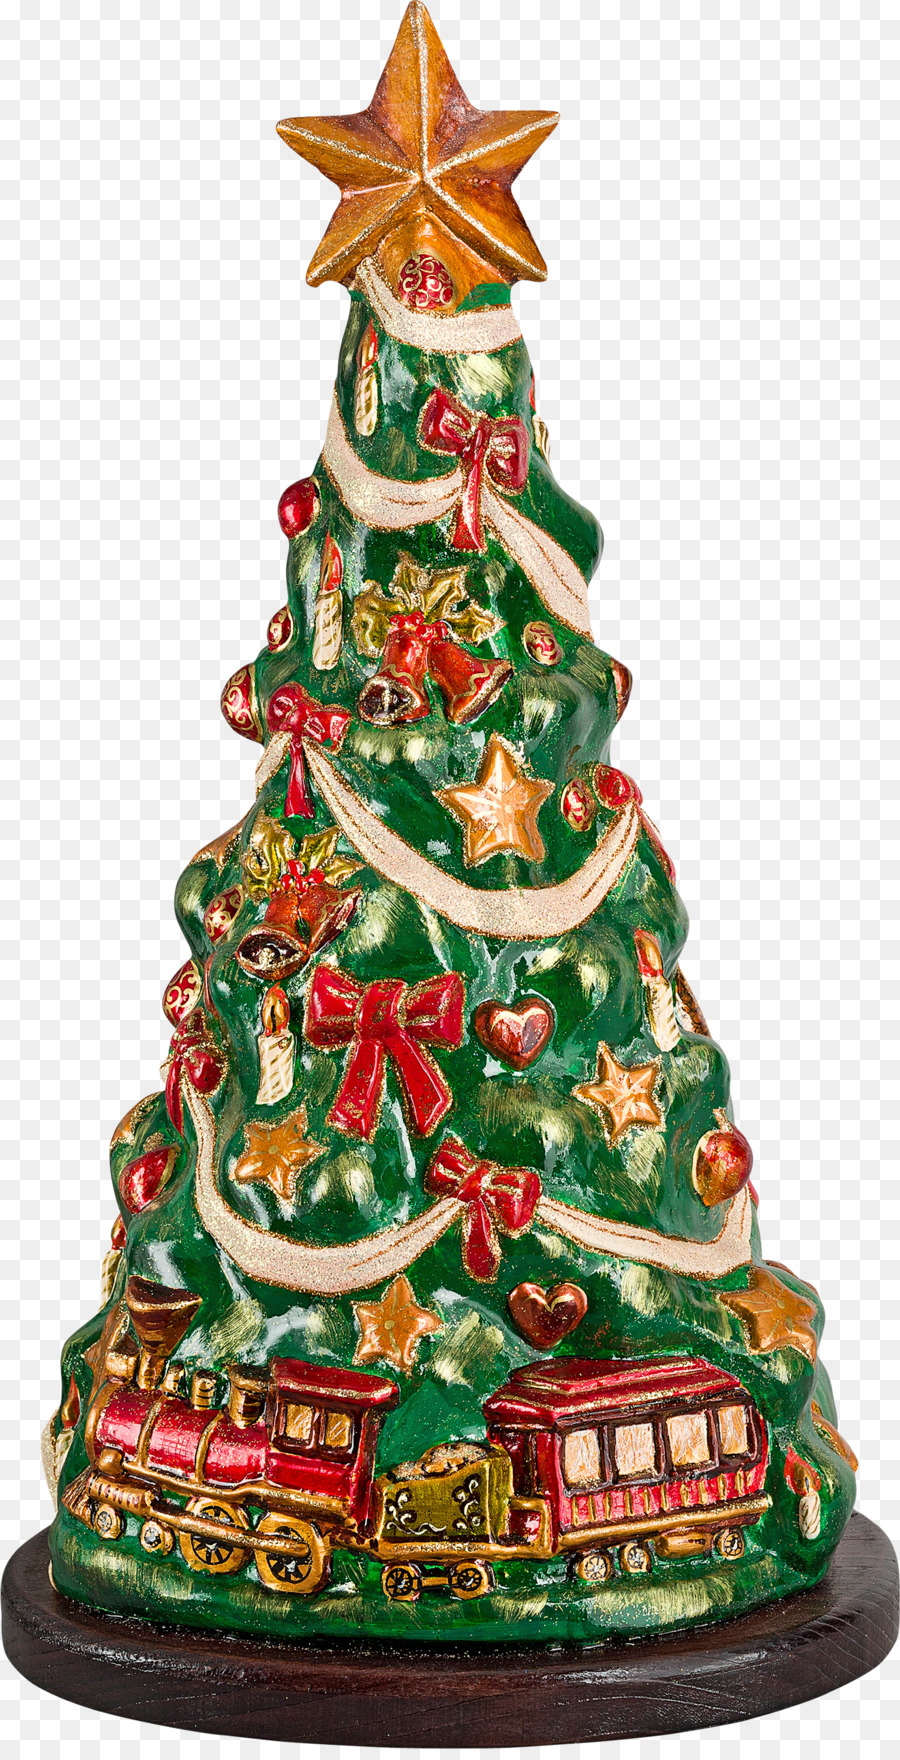 Weihnachtsbaum Christmas ornament Santa Claus - Weihnachten dress up